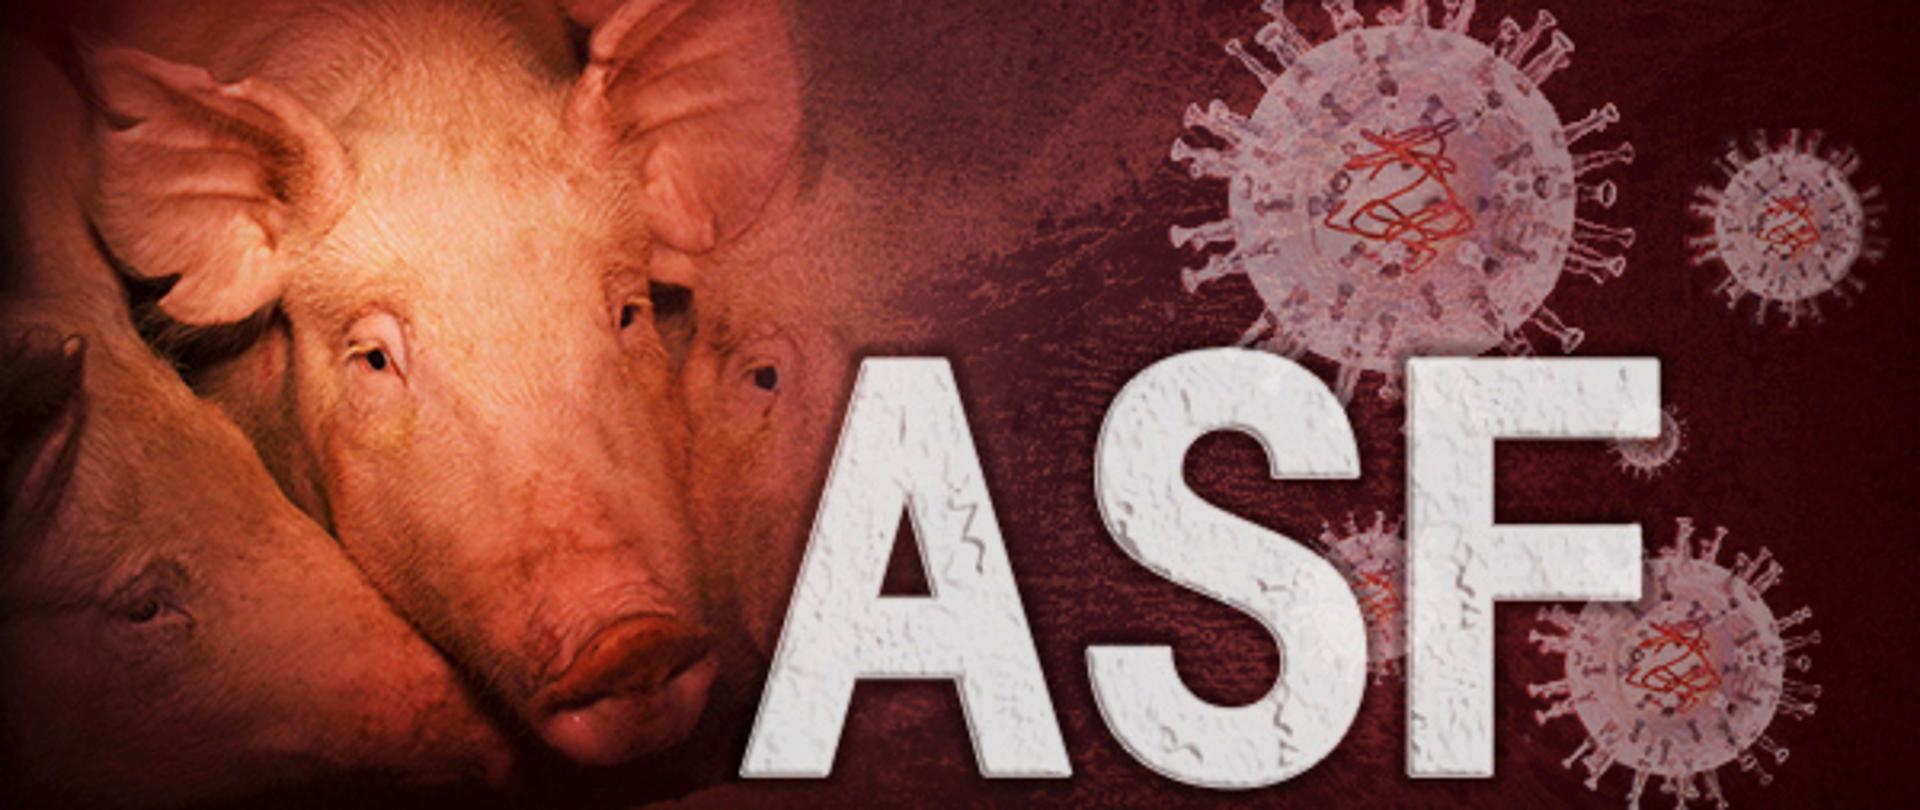 z lewej strony świnia z wielkimi uszami z prawej strony grafika okrągłych wirusów oraz biały napis ASF 